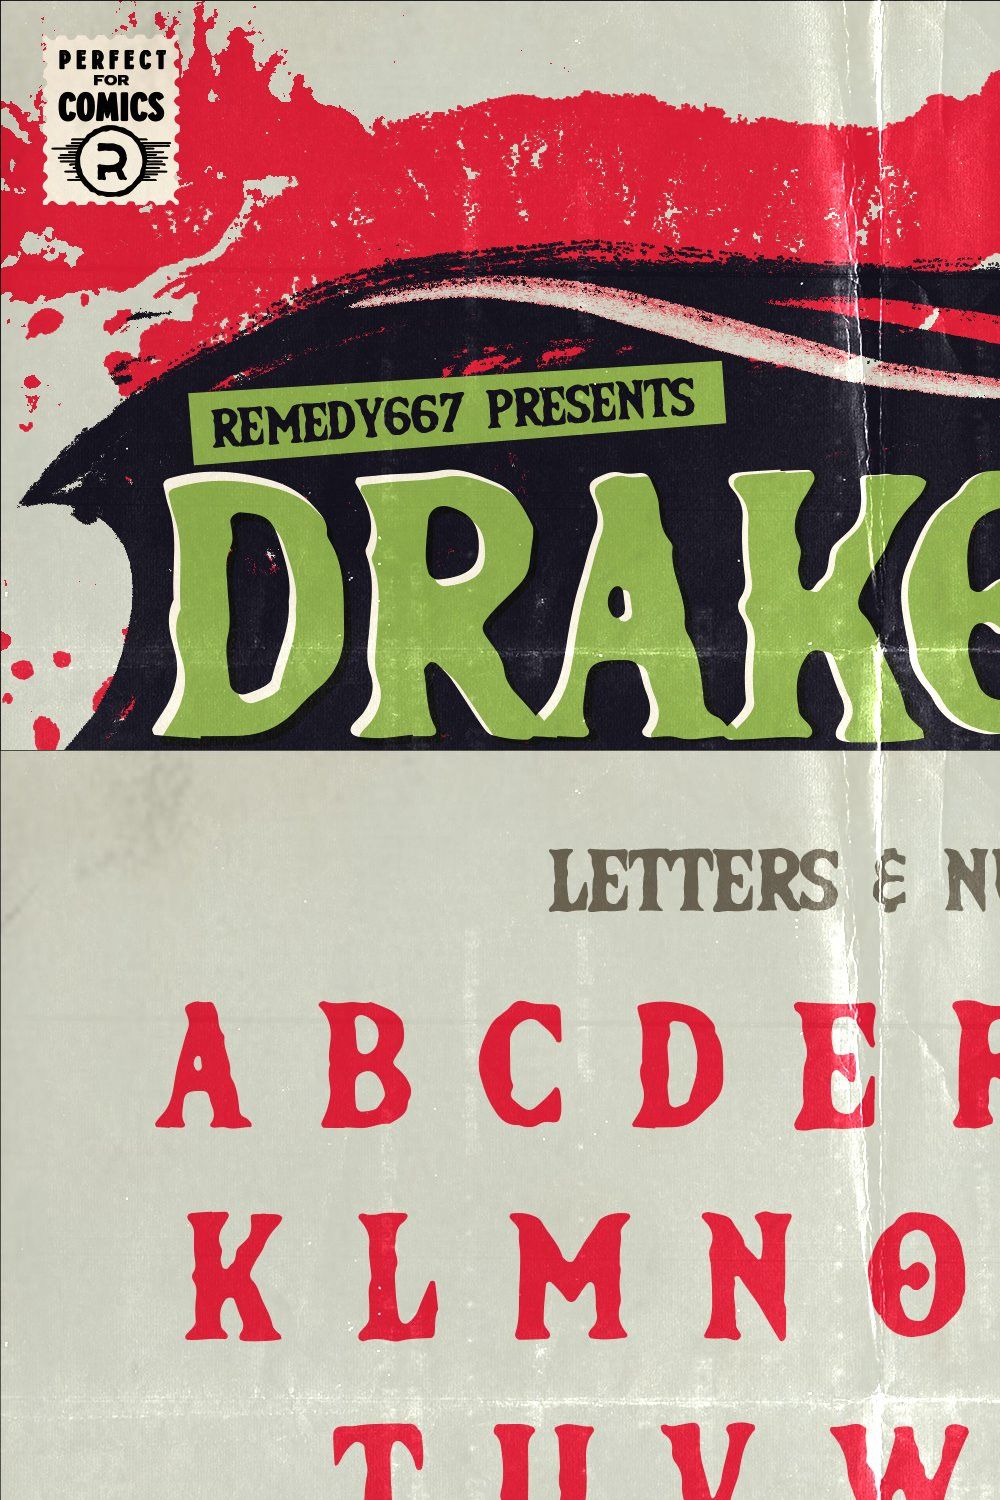 Drakoala – Neo-Gothic Horror Font pinterest preview image.